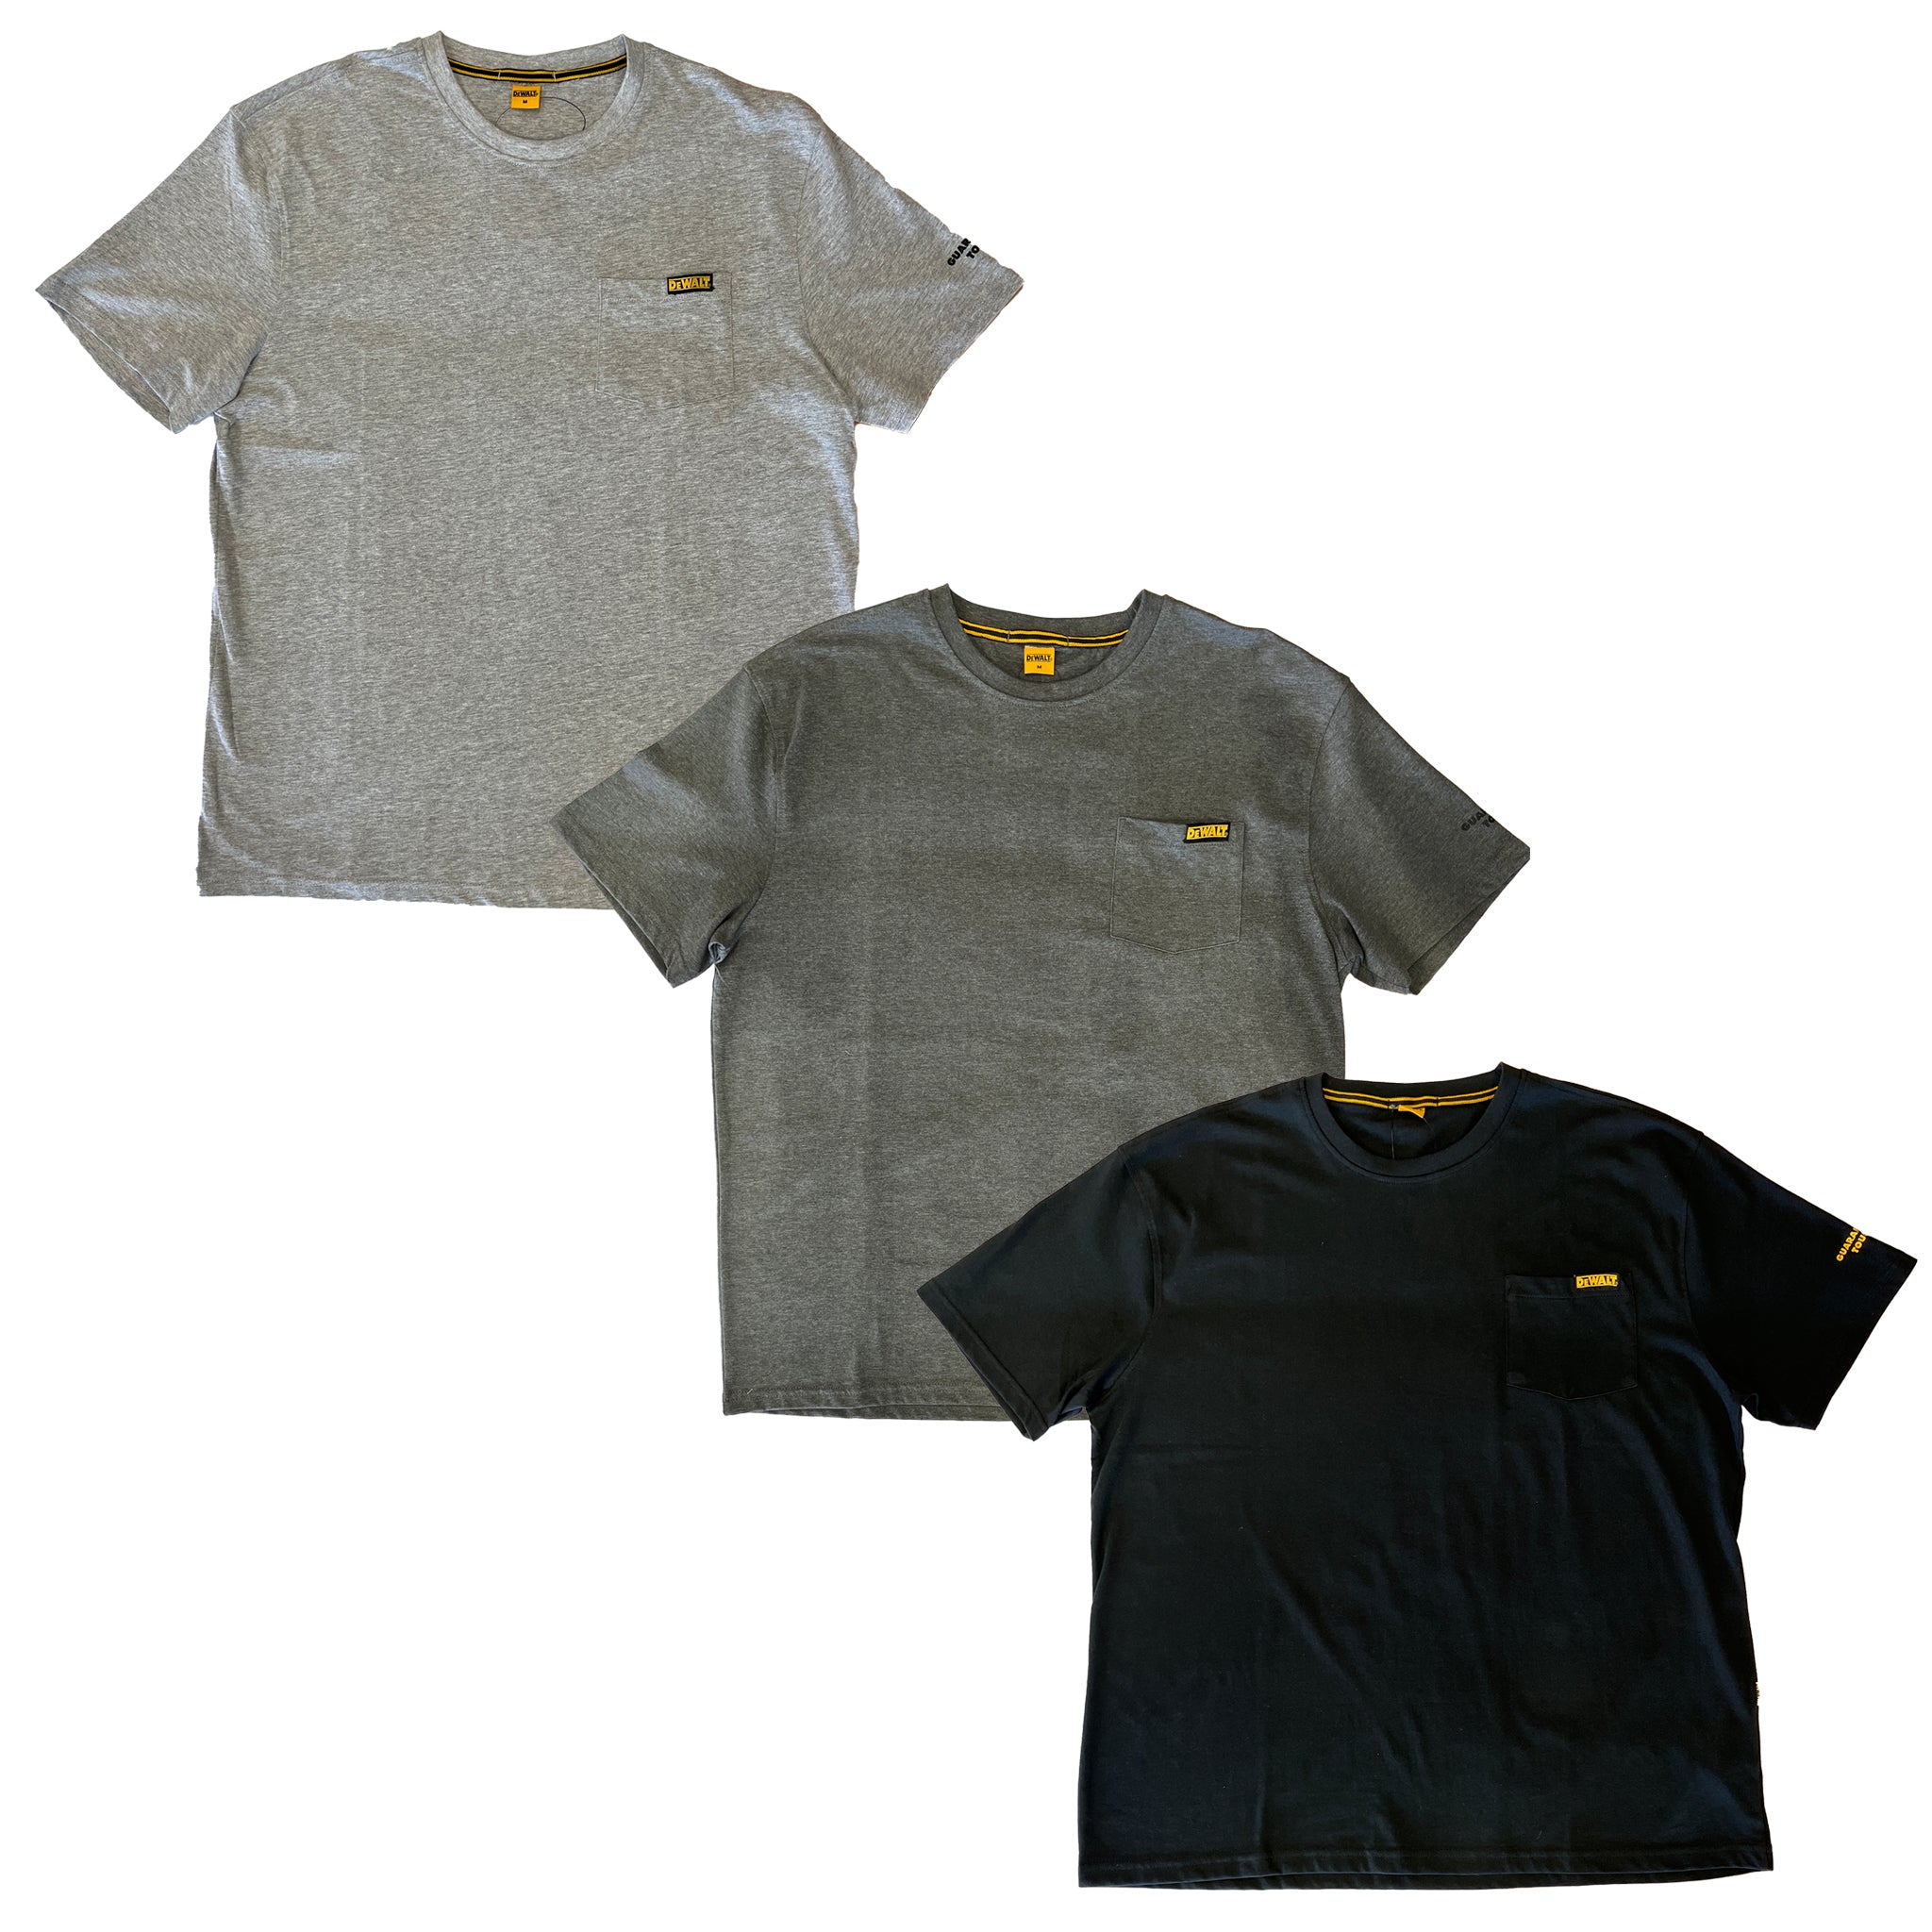 DEWALT Men's DXWW50018 Pocket T-Shirt – That Shoe Store and More